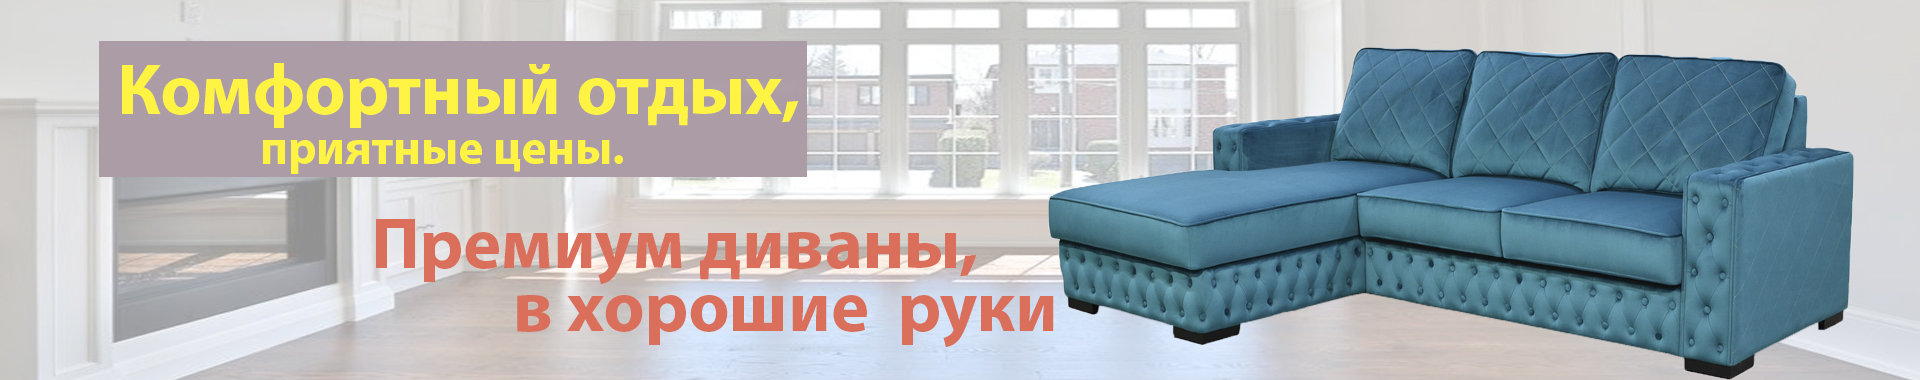 реклама диван